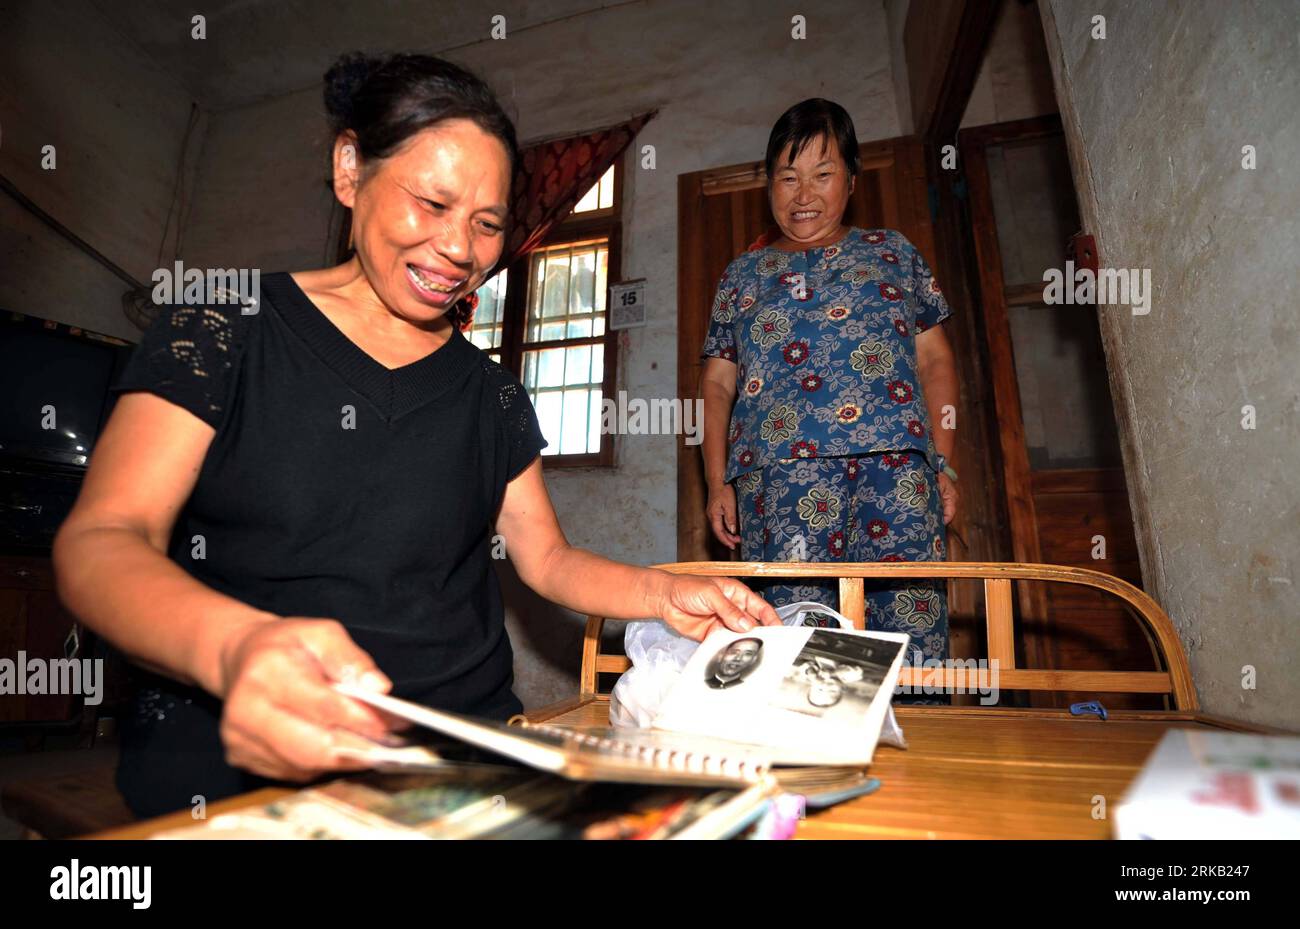 Bildnummer: 54448640 Datum: 15.09.2010 Copyright: imago/Xinhua (100921) -- CHANGSHA, 21. September 2010 (Xinhua) -- Xu Yuehua eröffnet am 15. September 2010 ein Album, um ihren Sohn in Xiangtan, der zentralchinesischen Provinz Hunan, vorzustellen. Die 55-jährige Xu, die bei einem Unfall vor drei Jahrzehnten ihre Beine verlor, widmet sich der Erziehung der Kinder in dem Sozialinstitut, das sie behütete. In den letzten 37 Jahren hat Xu mehr als 130 Kinder aufgezogen, die sie gerne als Stuhlmutter bezeichnen, weil sie so geht. Sie bedauert ihre Entscheidung nie und sagt, es sei nur ihre Pflicht und ihr Vergnügen, sich um diese Kinder zu kümmern. (X Stockfoto